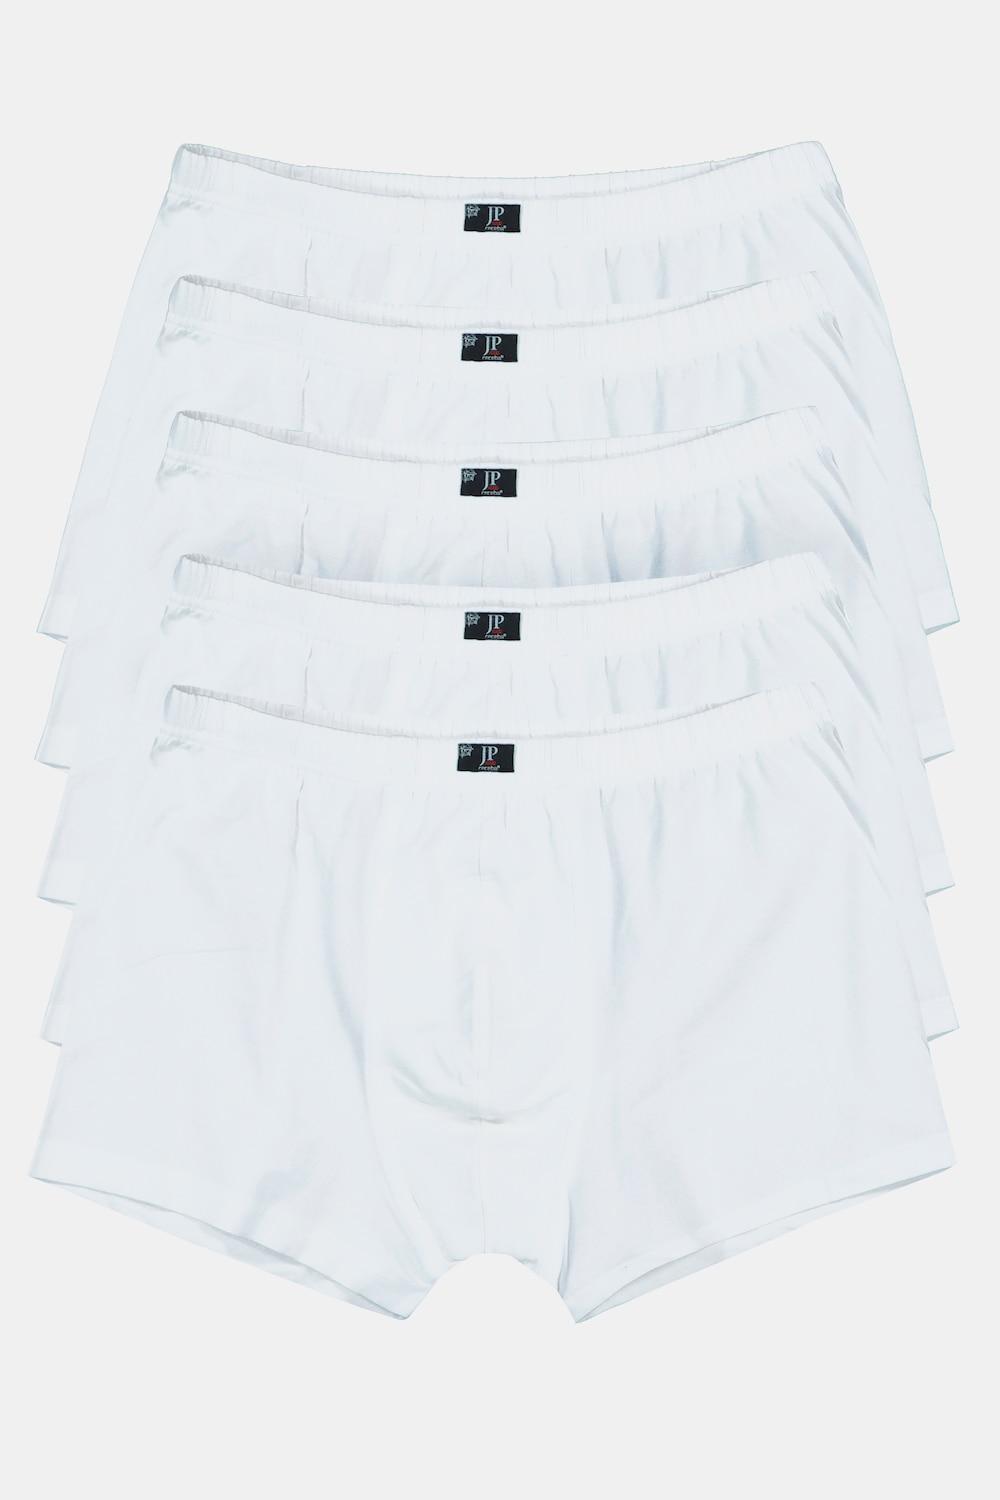 Große Größen Pants, Herren, weiß, Größe: 5XL, Baumwolle, JP1880